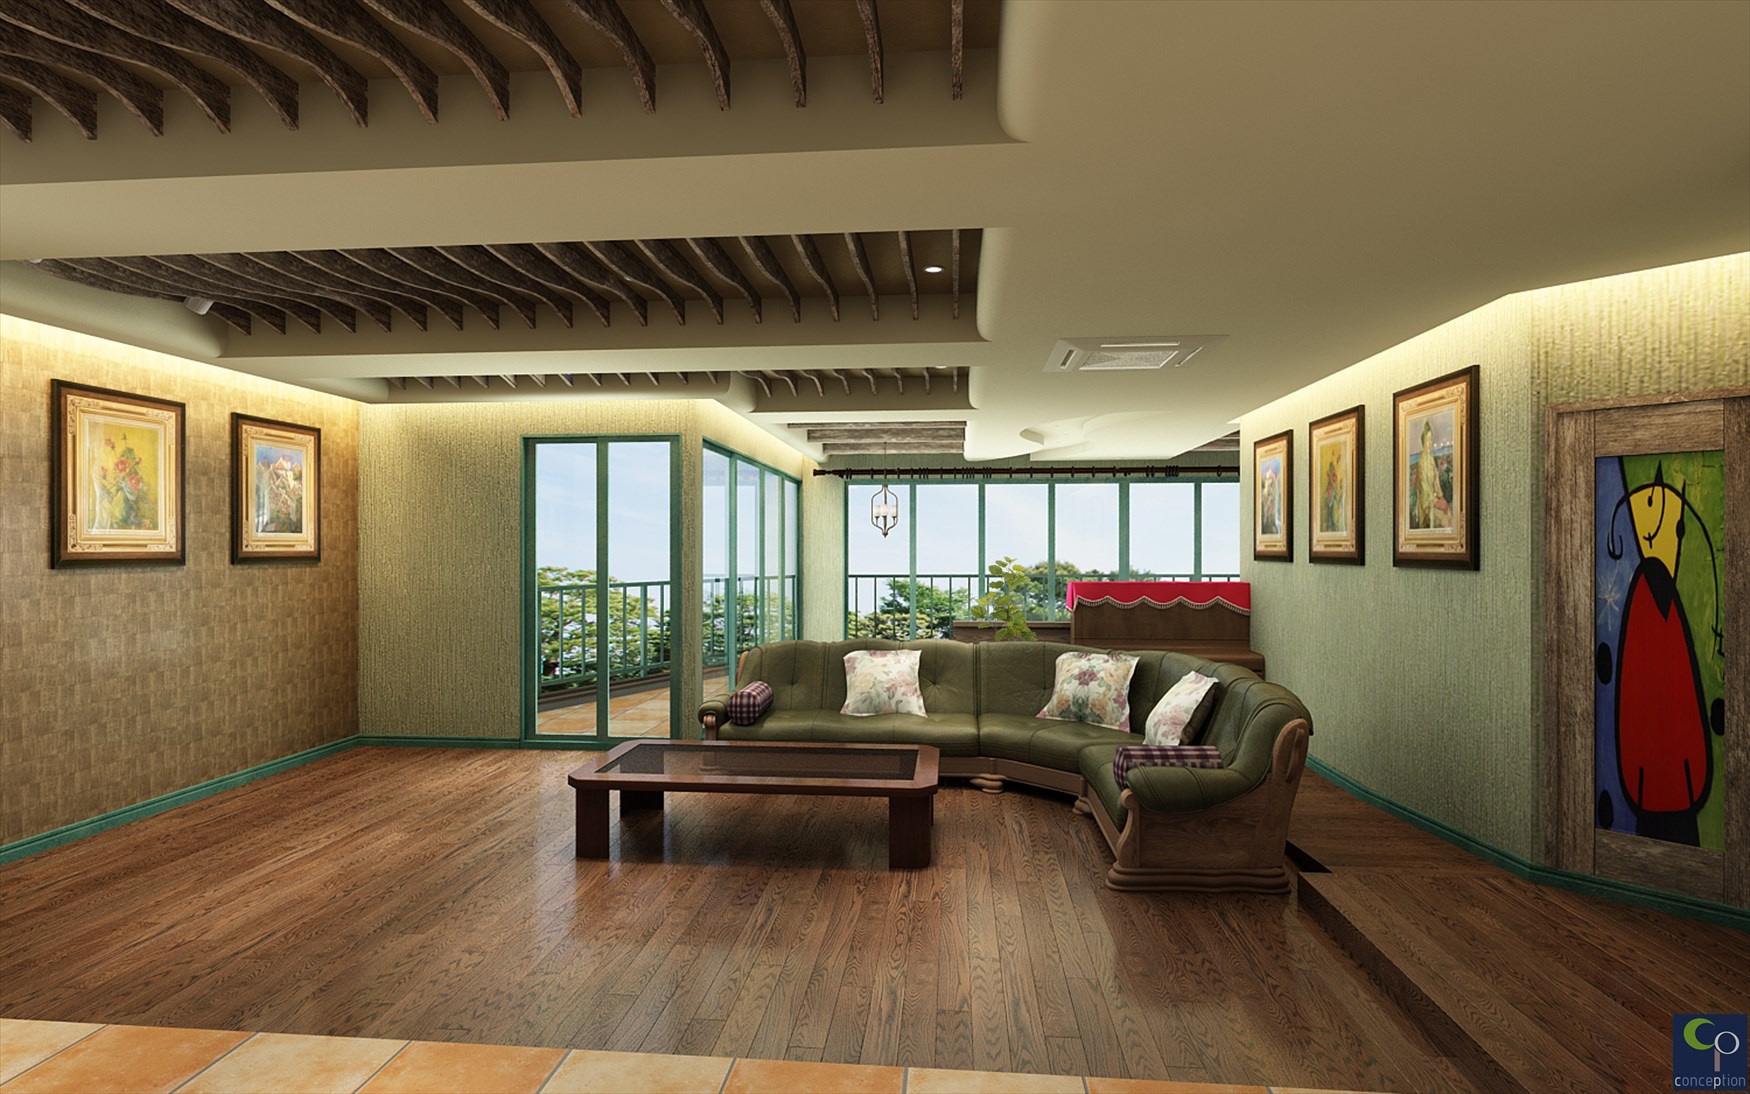 株式会社コンセプションがデザイン設計した住宅リノベーション首里N邸の写真です。